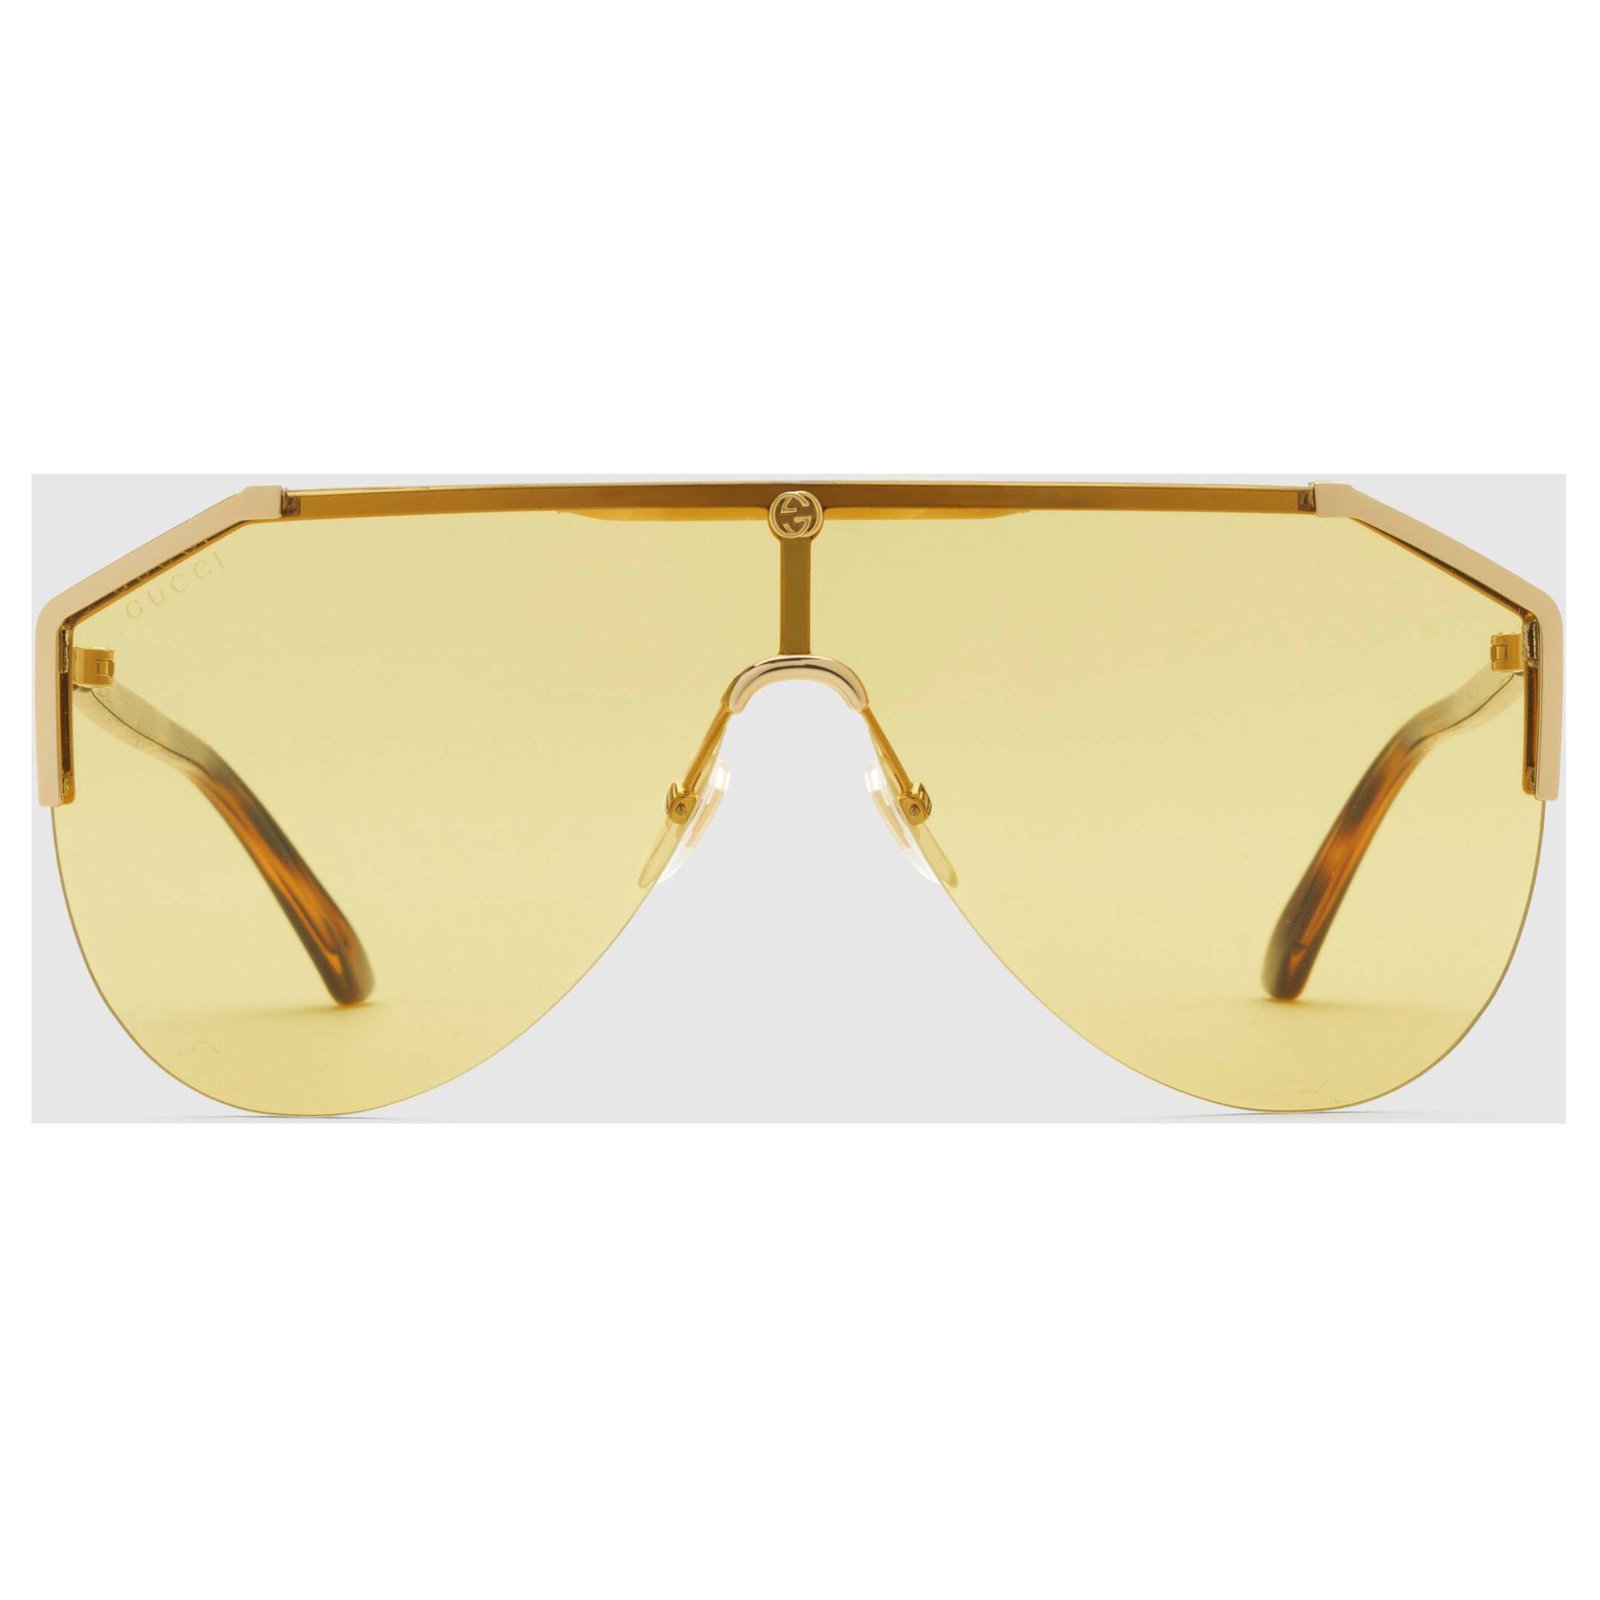 Gucci Mask sunglasses gucci new 2019/20 